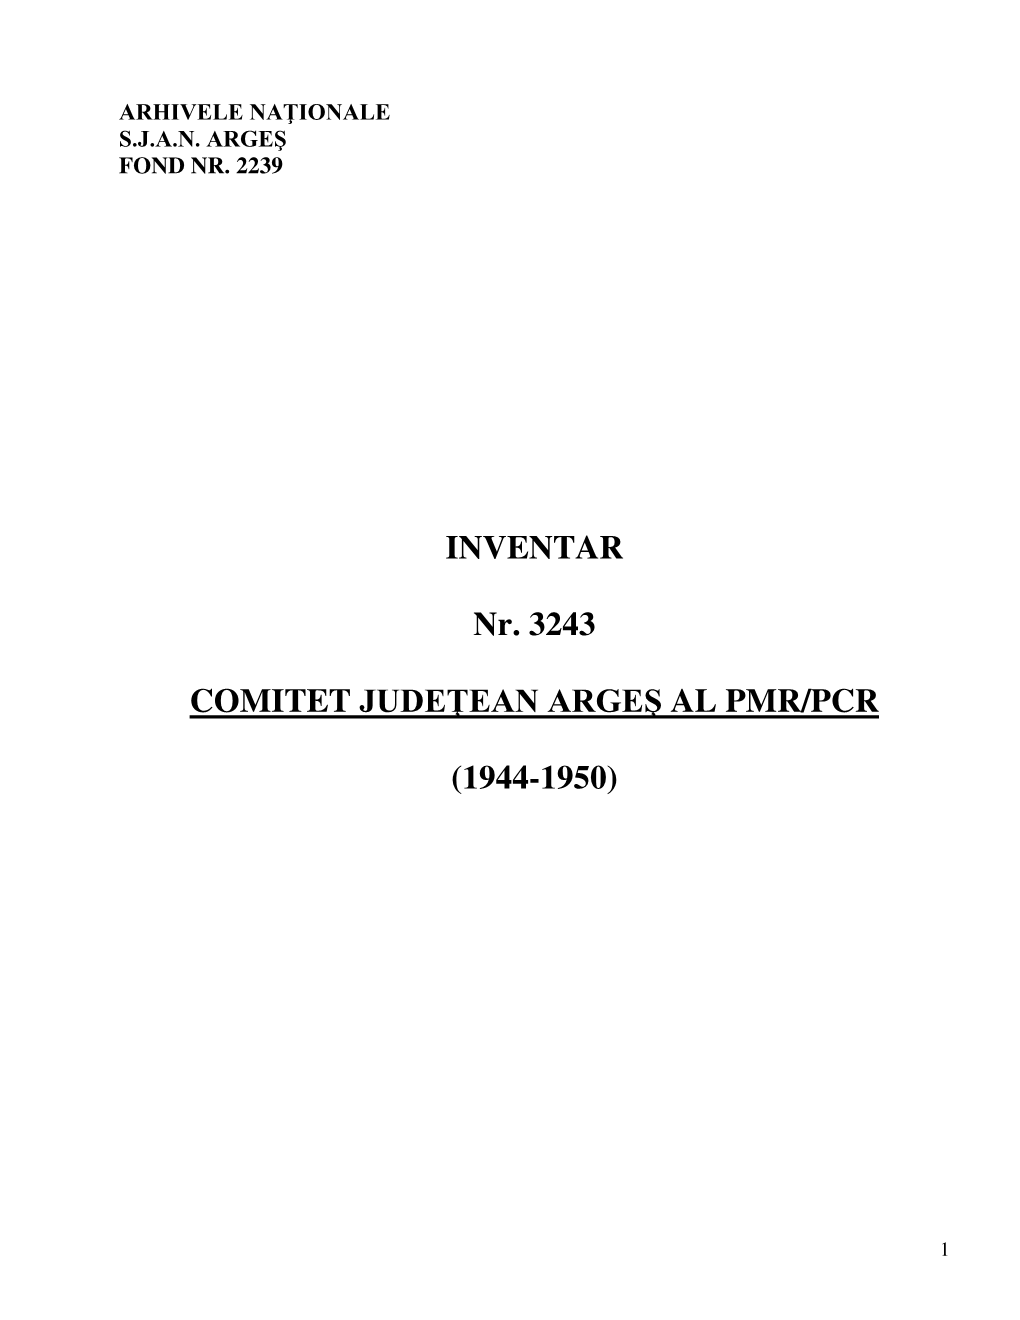 INVENTAR Nr. 3243 COMITET JUDE EAN ARGEŞ AL PMR/PCR (1944-1950)